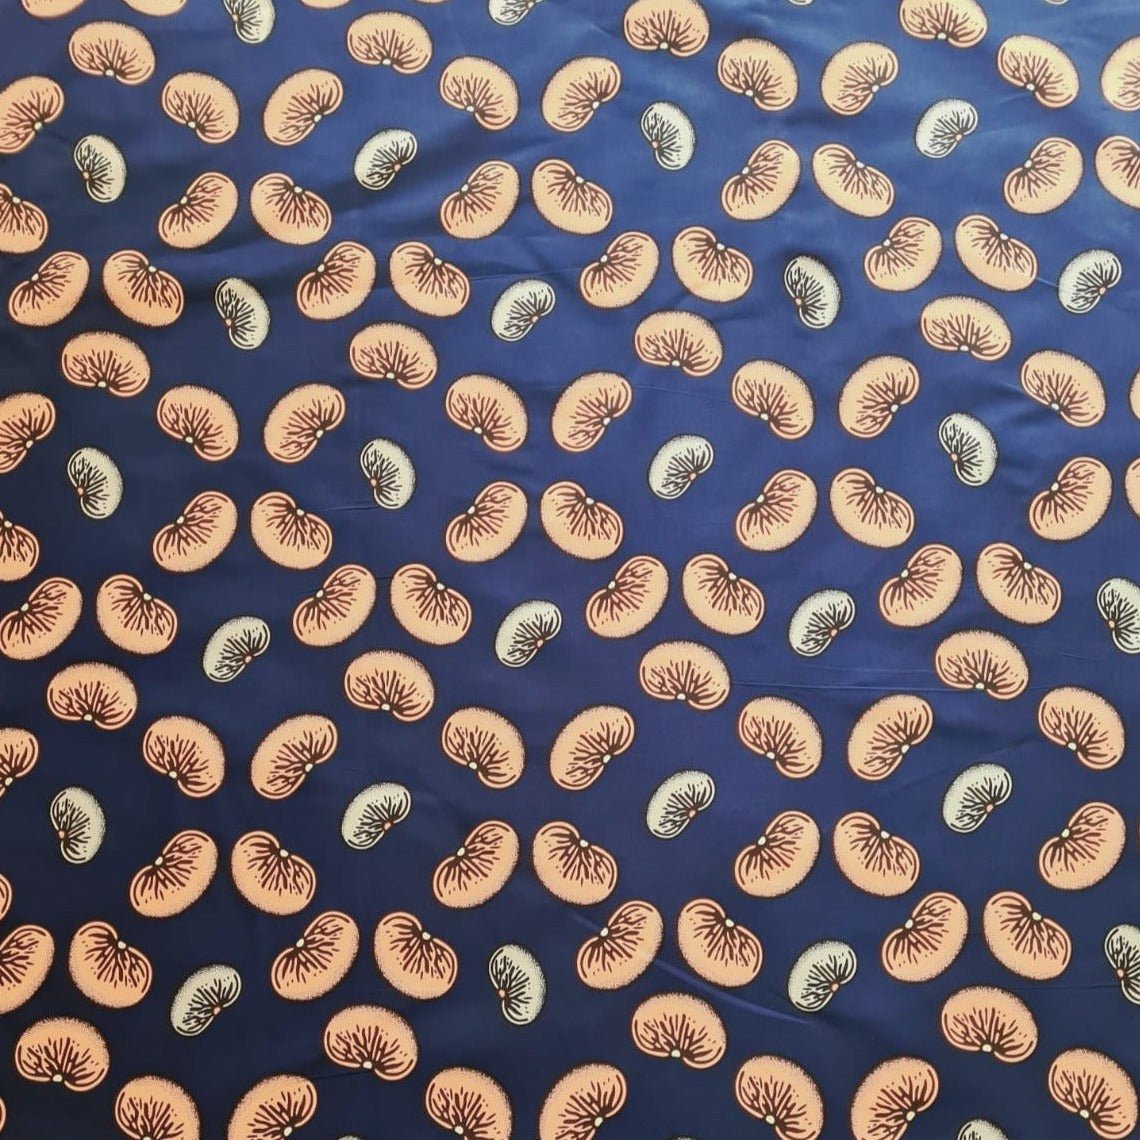 Royal Blue & Peach Bean Print Ankara Fabric - ak40181 - House of Prints